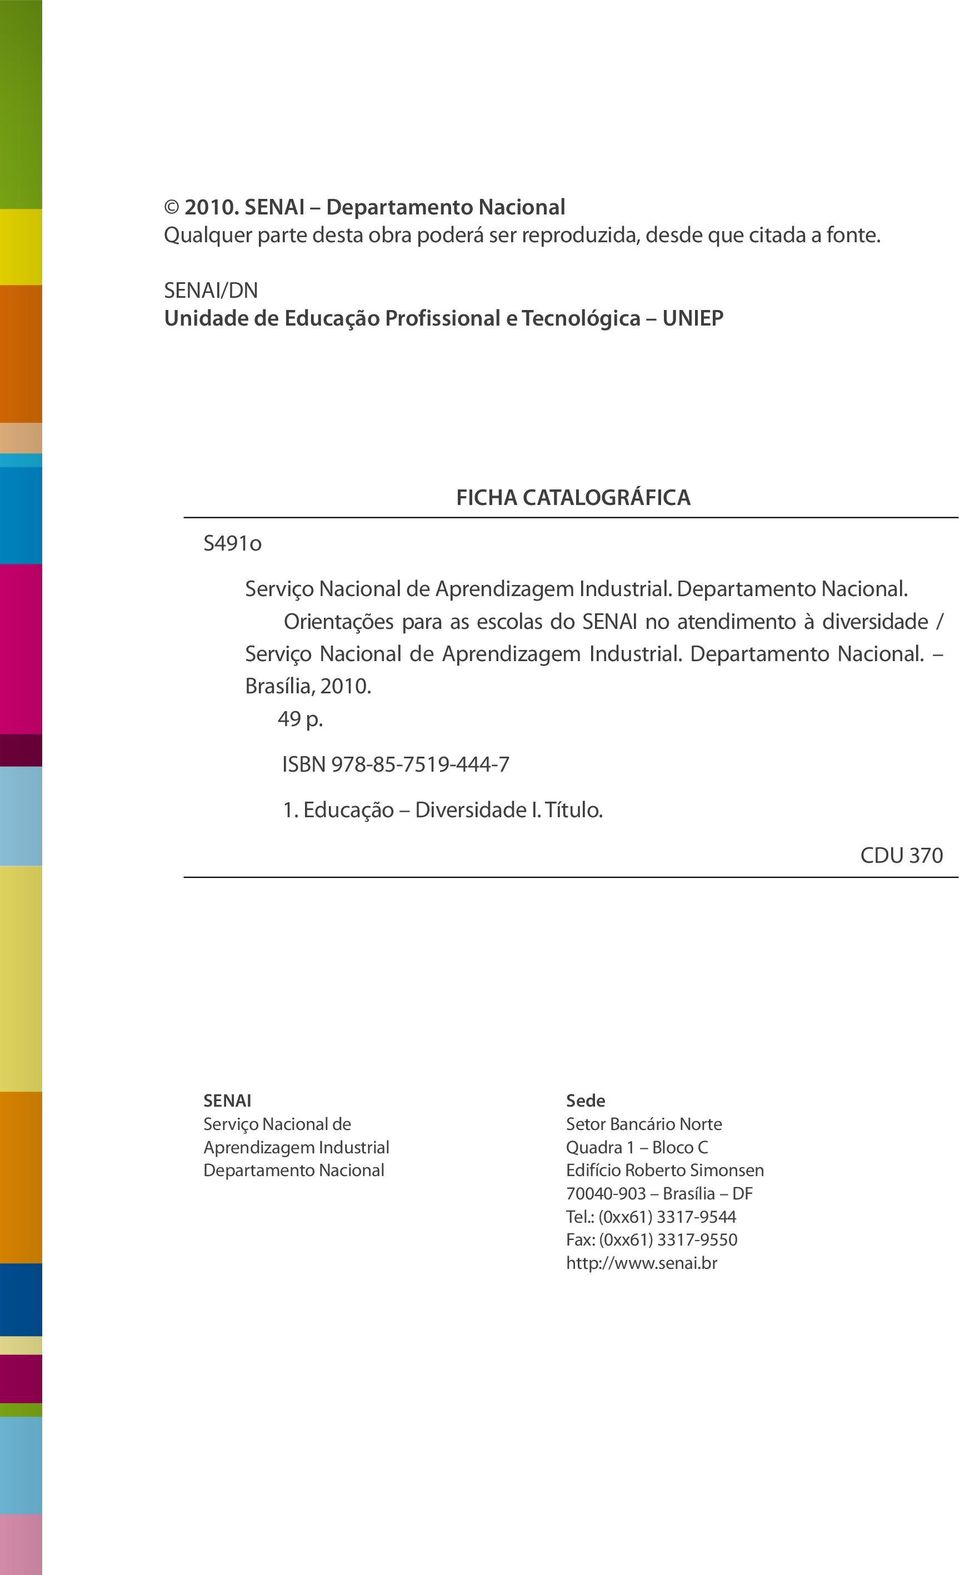 Orientações para as escolas do SENAI no atendimento à diversidade / Serviço Nacional de Aprendizagem Industrial. Departamento Nacional. Brasília, 2010. 49 p.